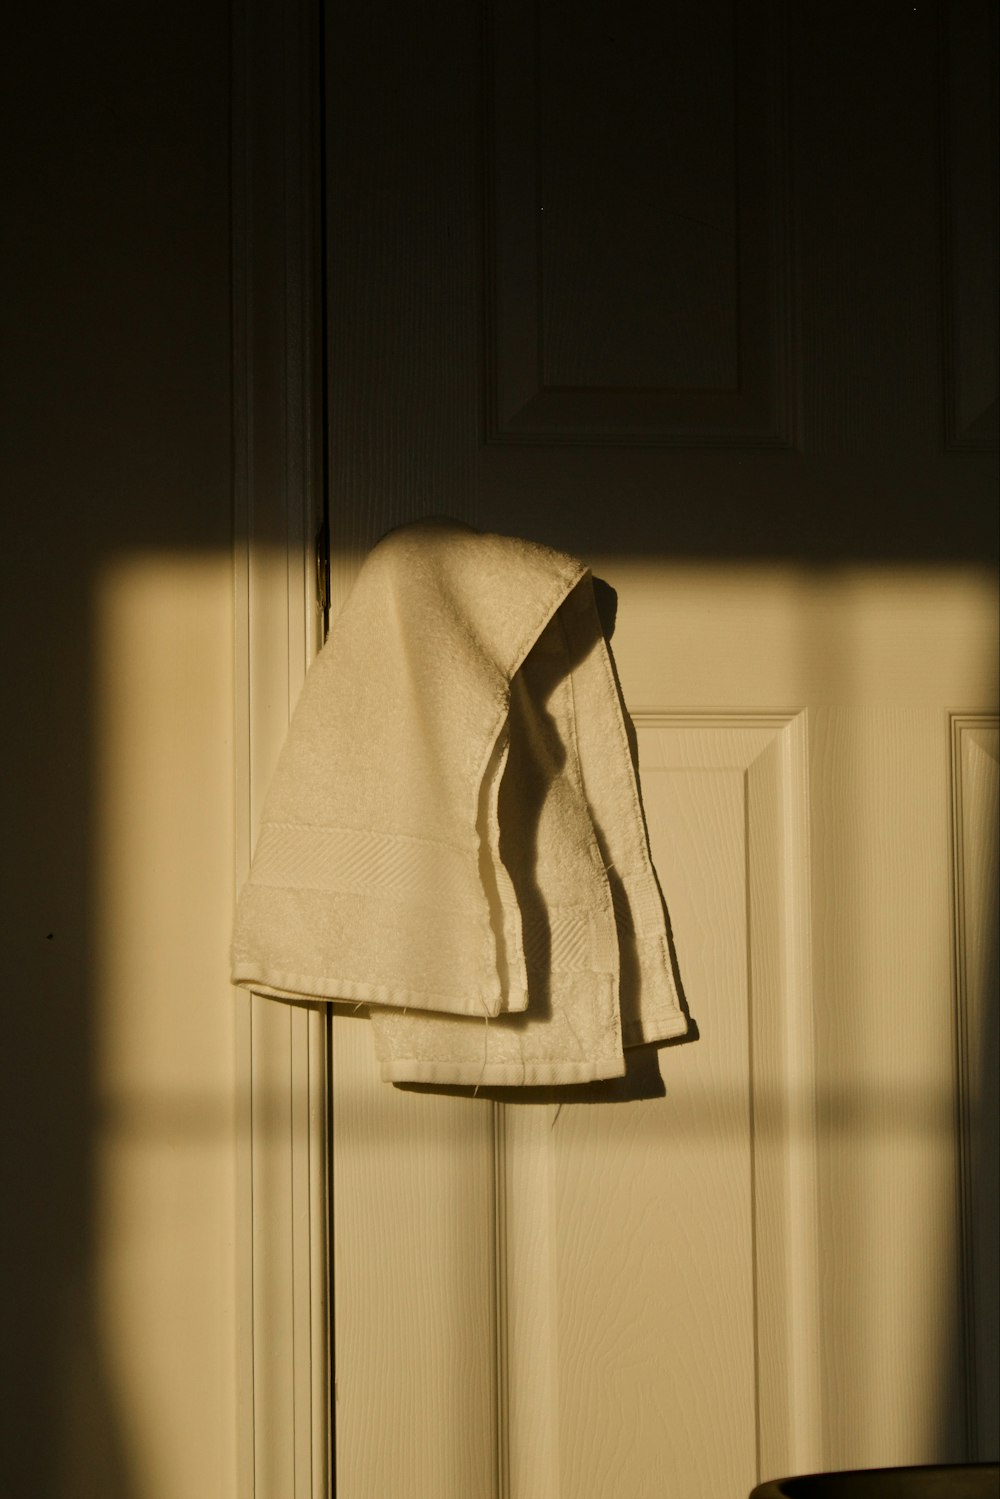 a towel is hanging on a door handle